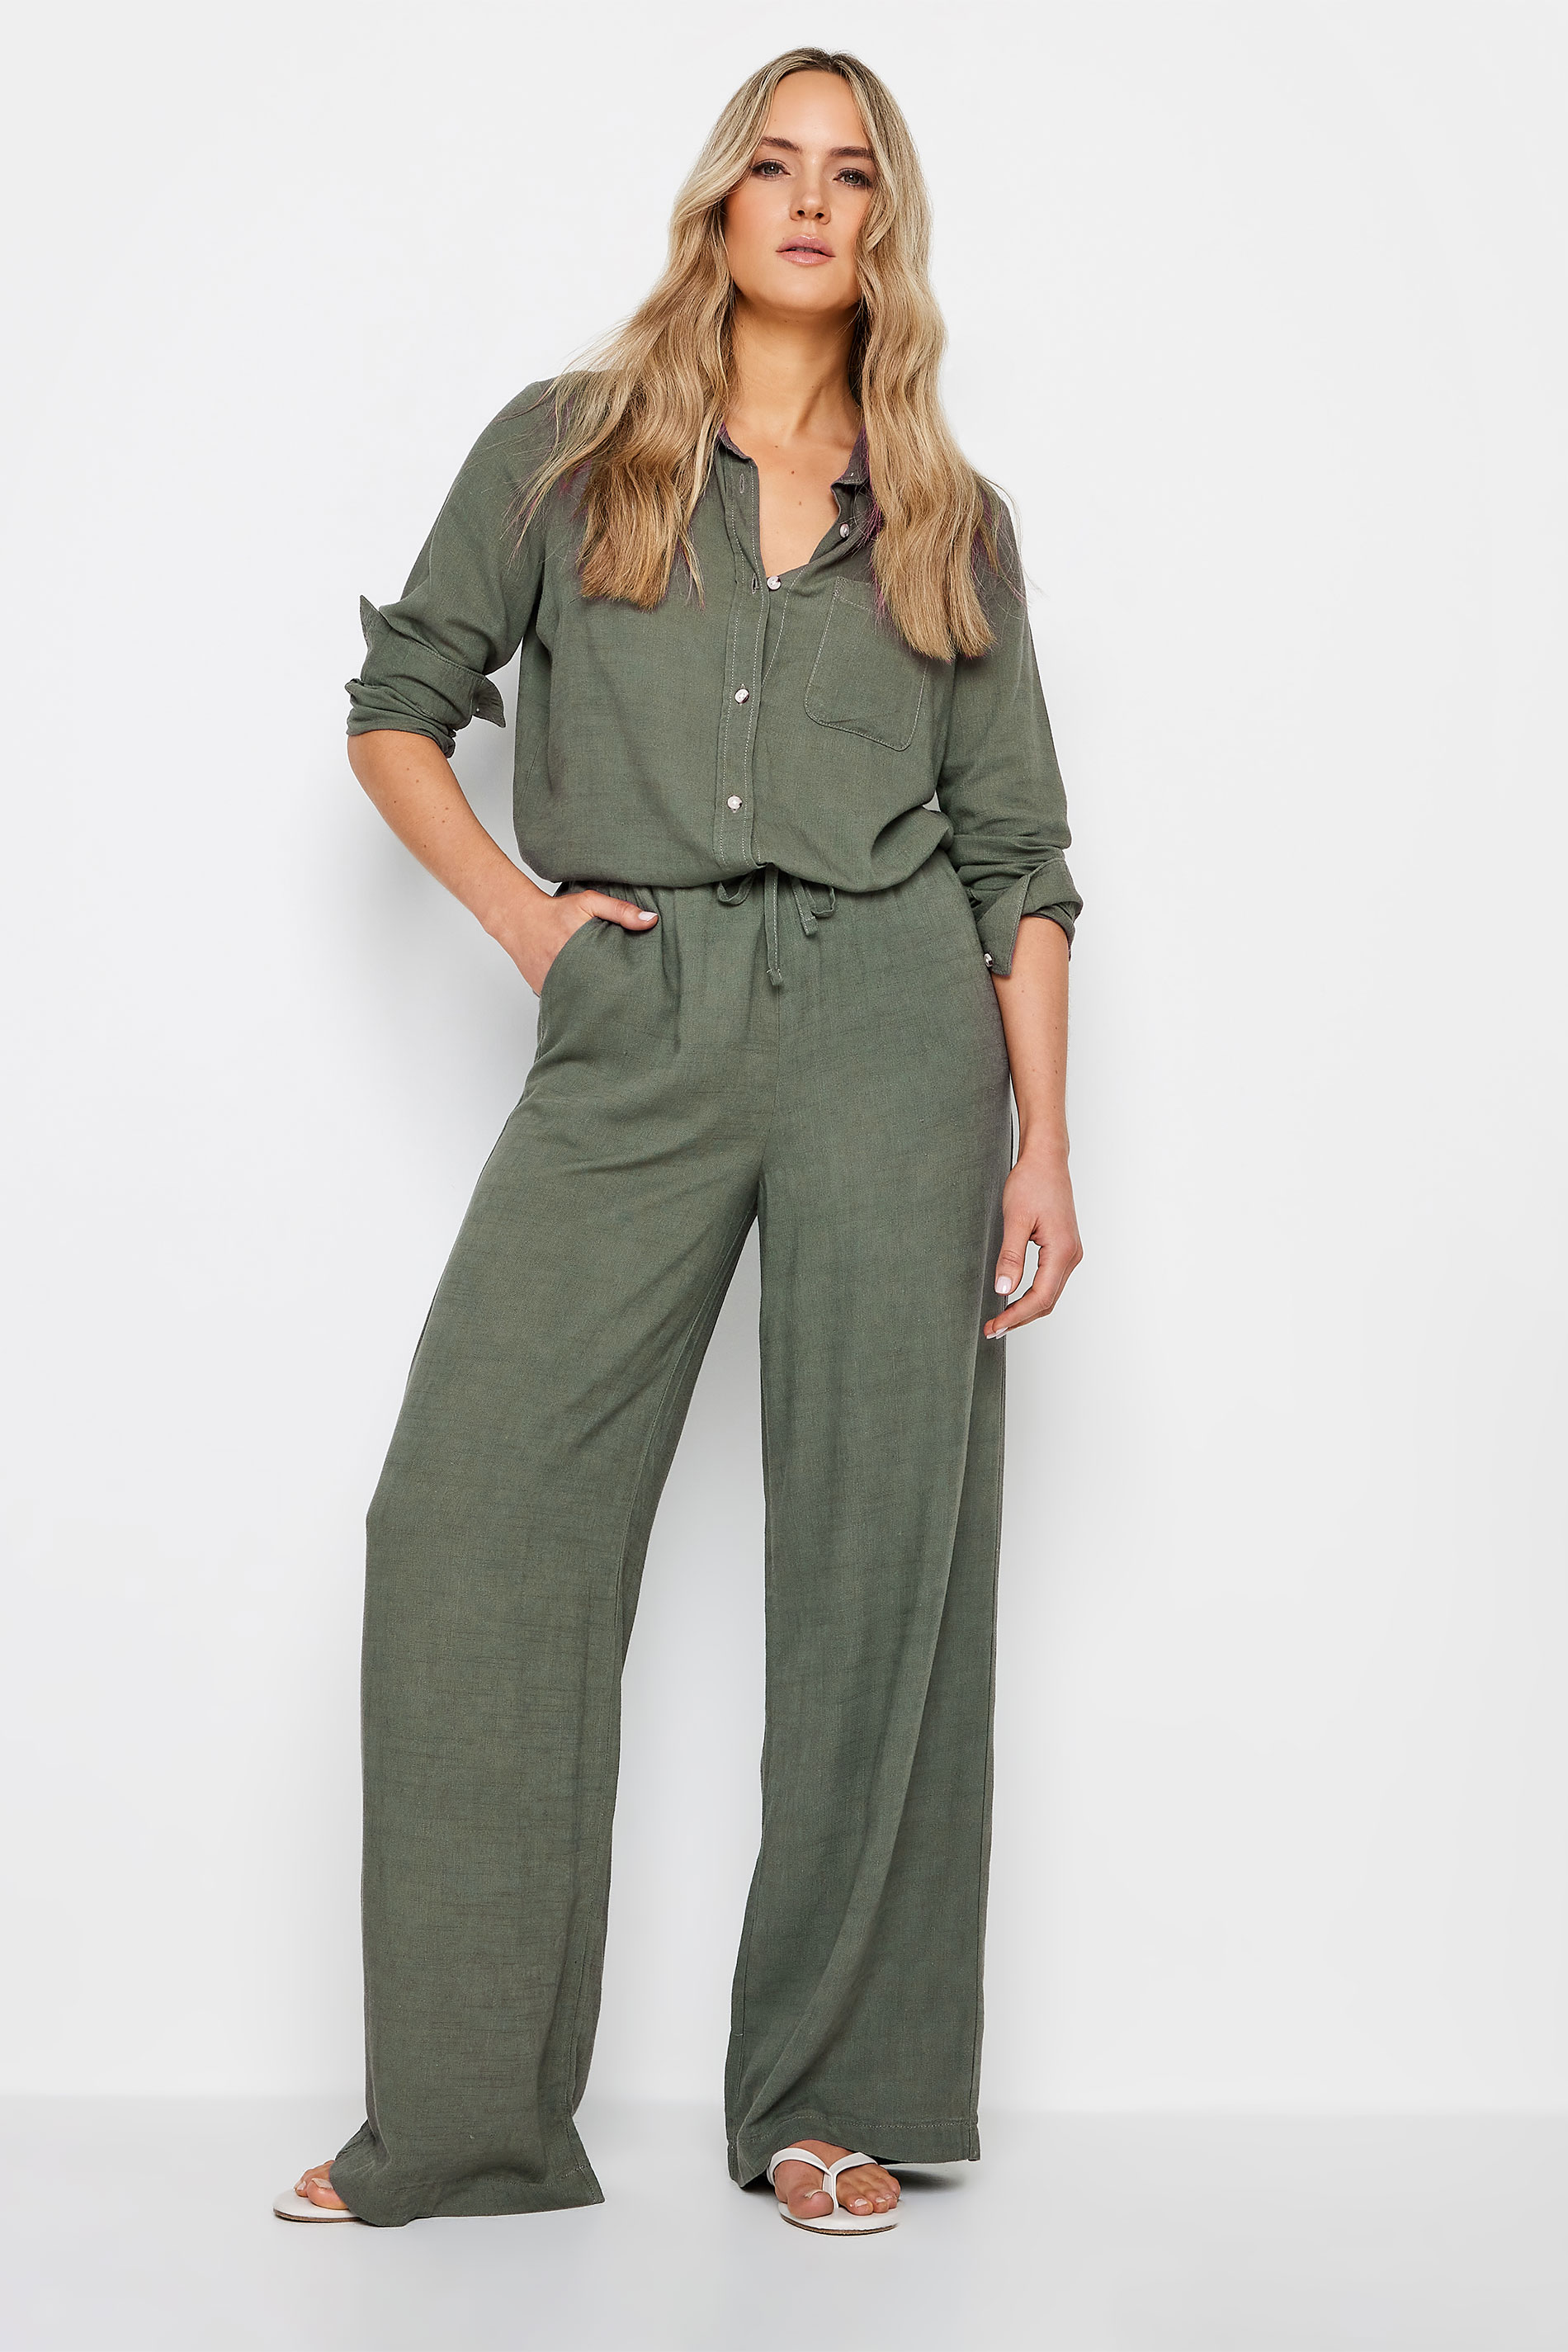 LTS Tall Womens Khaki Green Linen Shirt | Long Tall Sally 2